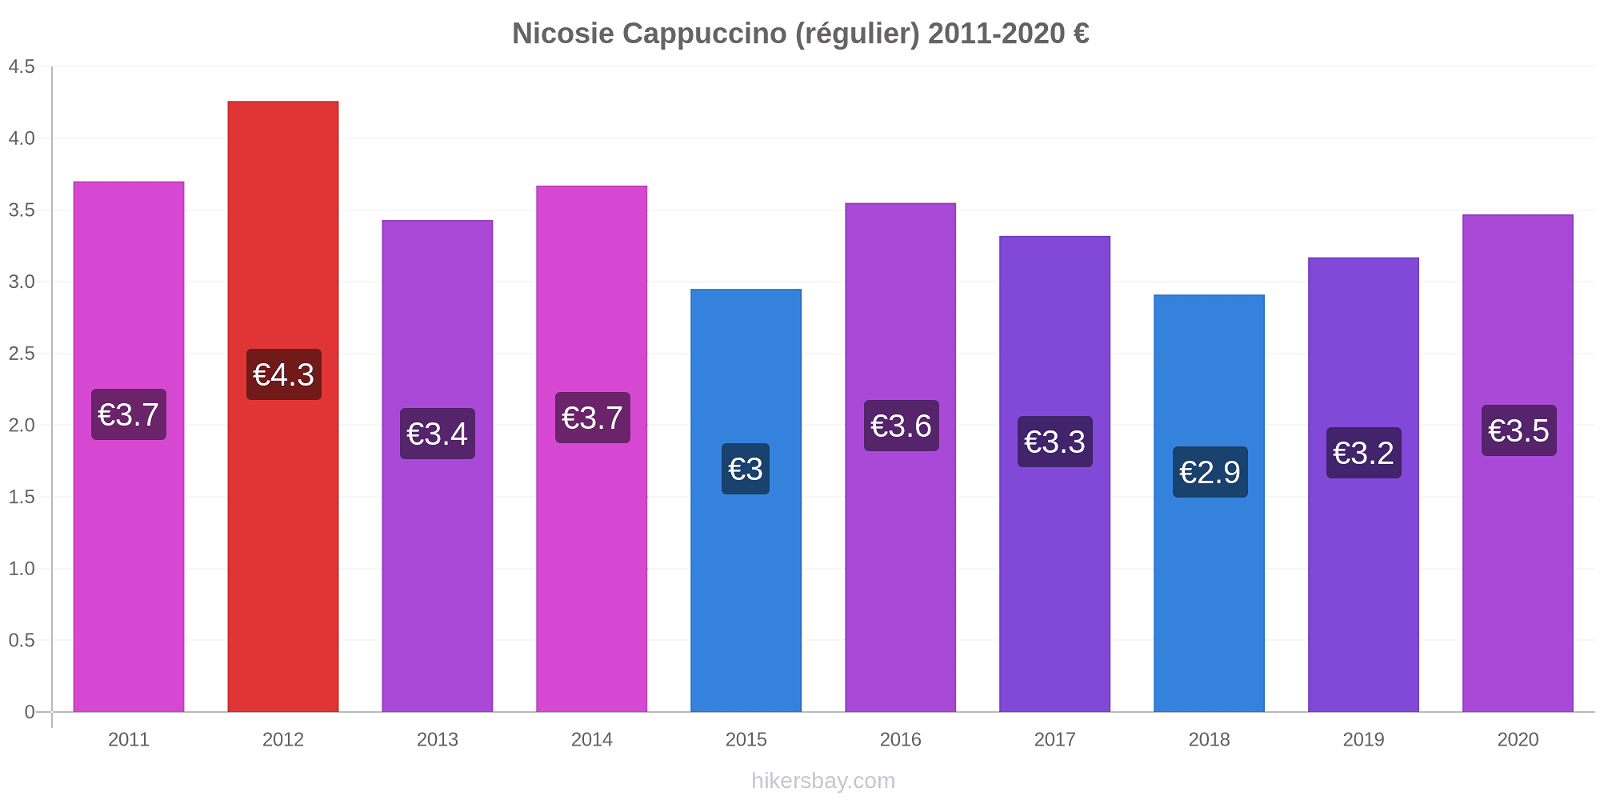 Nicosie changements de prix Cappuccino (régulier) hikersbay.com